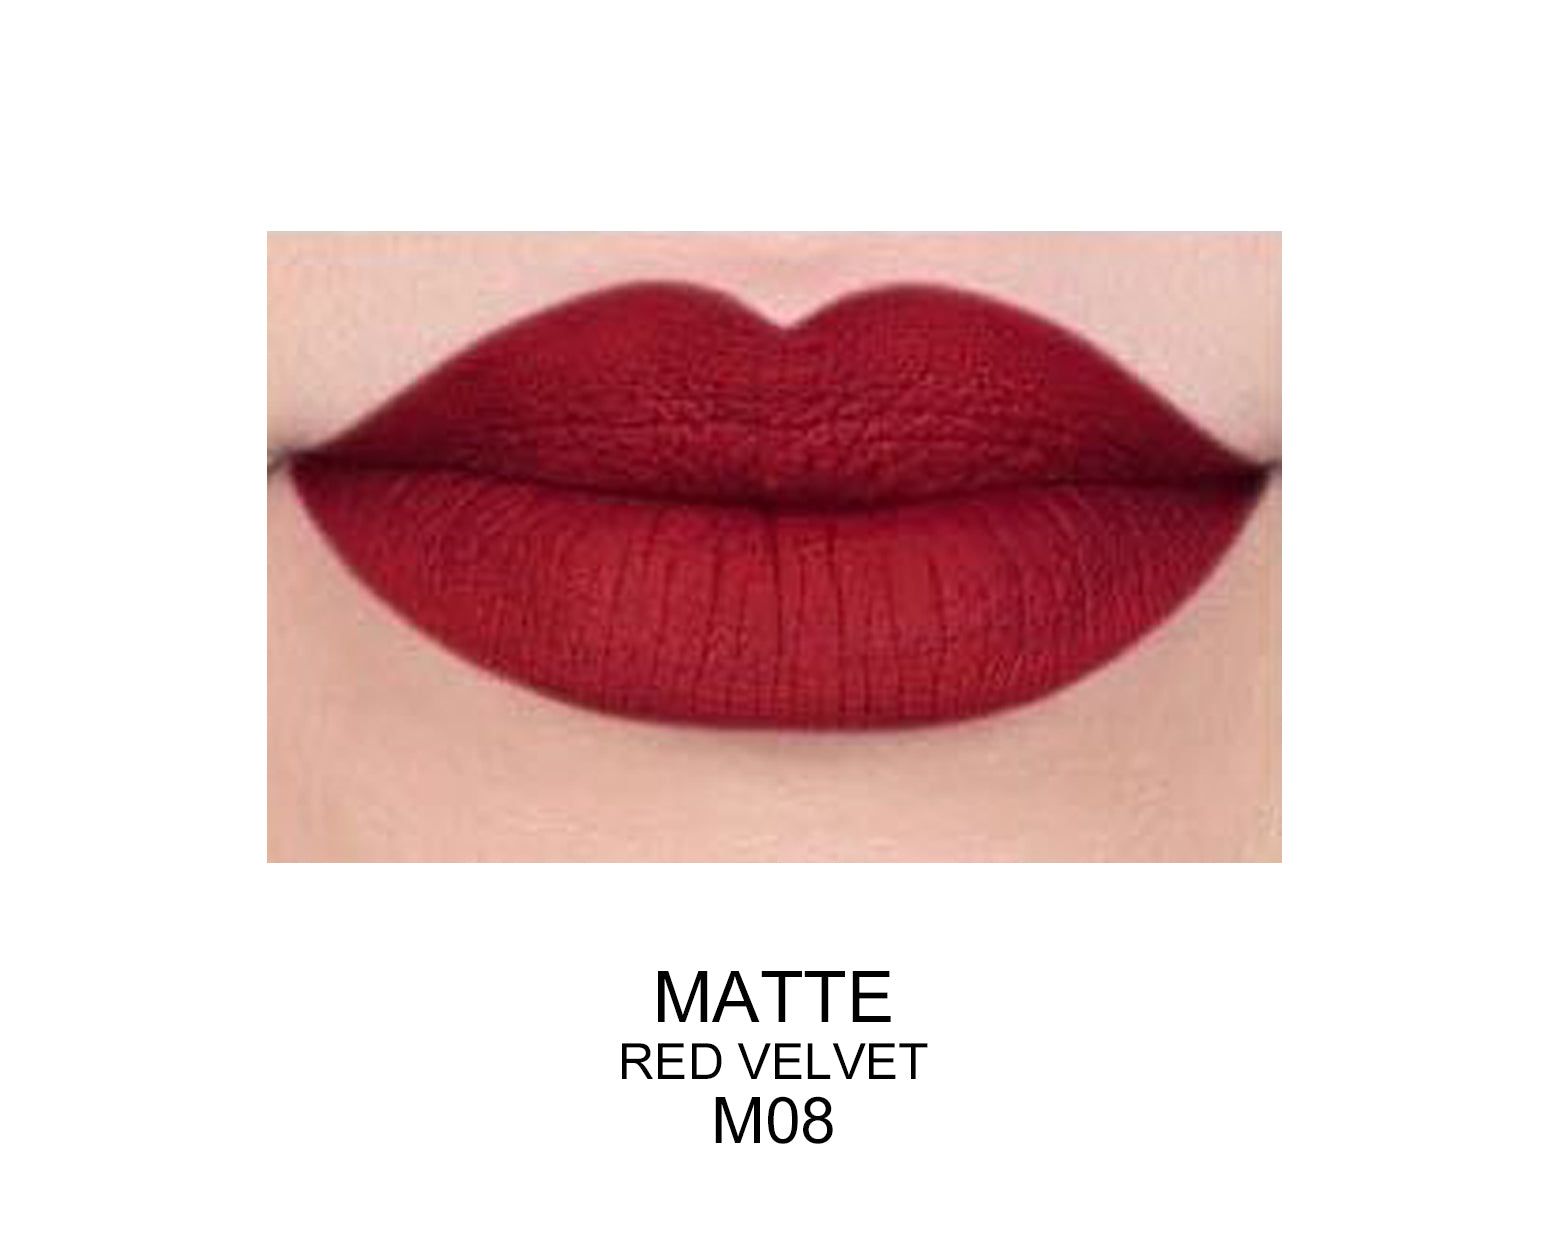 Long Lasting Matte Lip Gloss red velvet